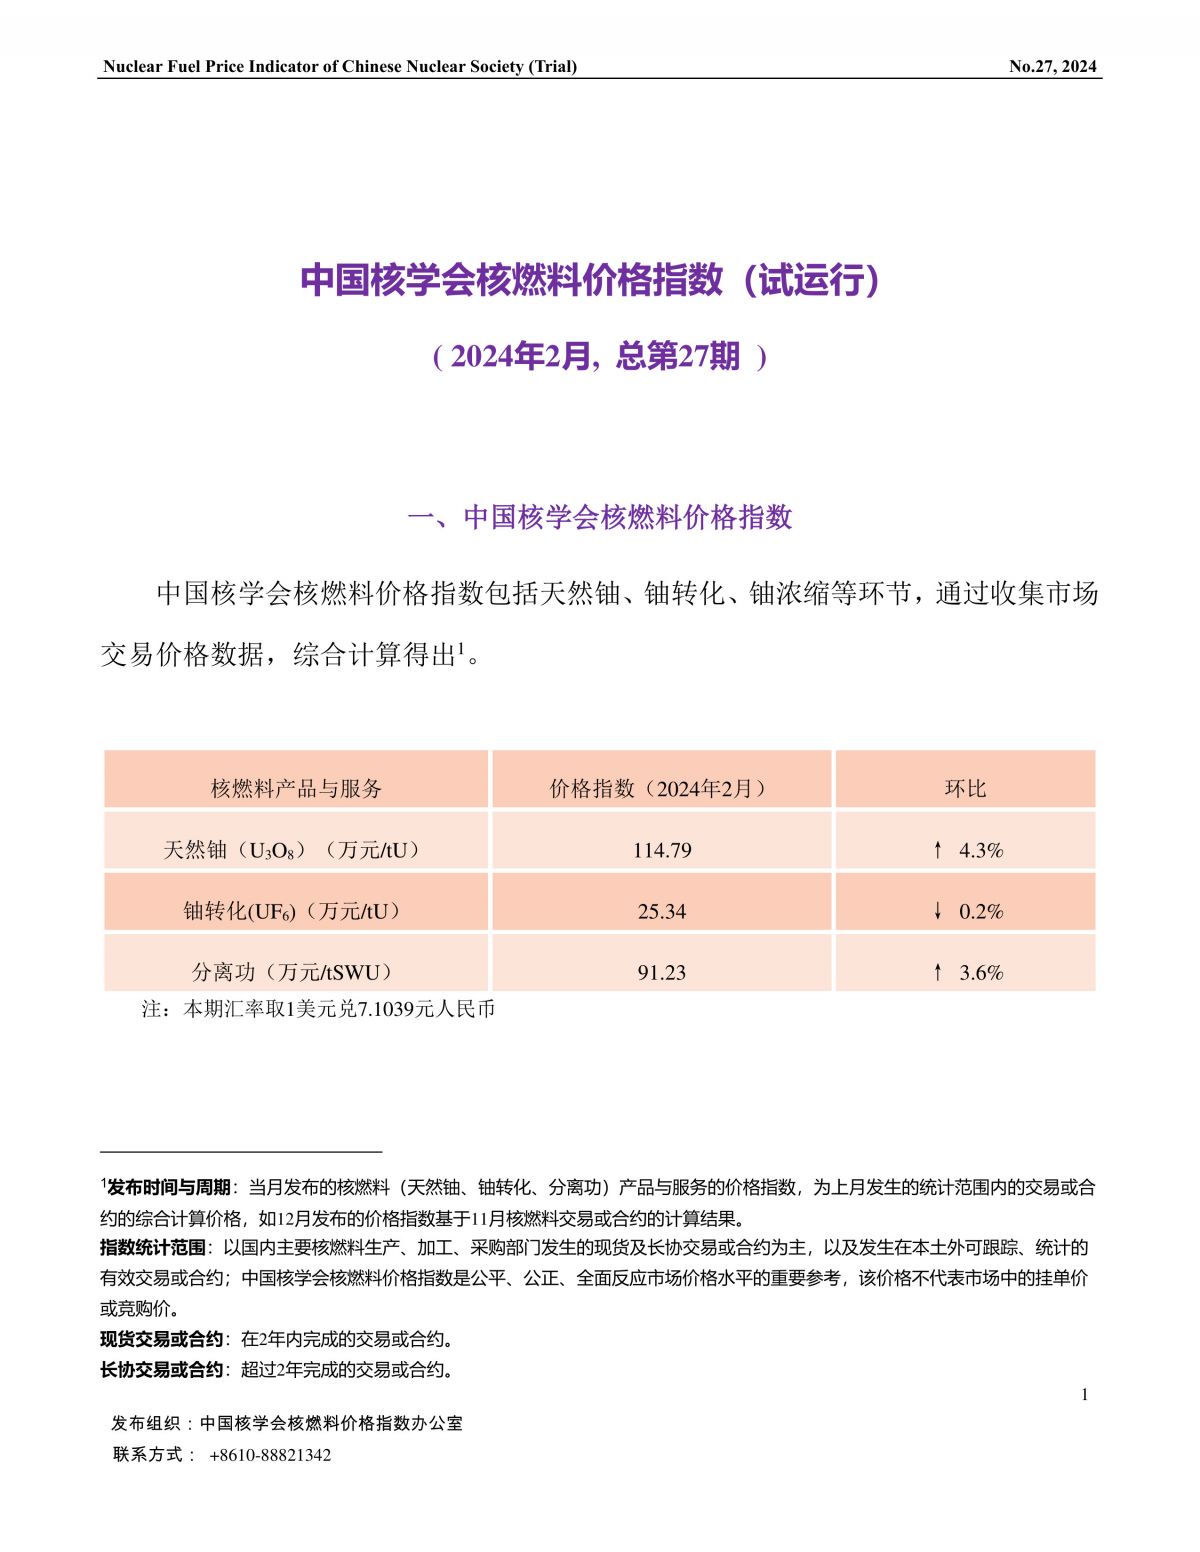 中国核学会核燃料价格指数(试运行)（2024年2月,总第27期）_CN-1.jpg